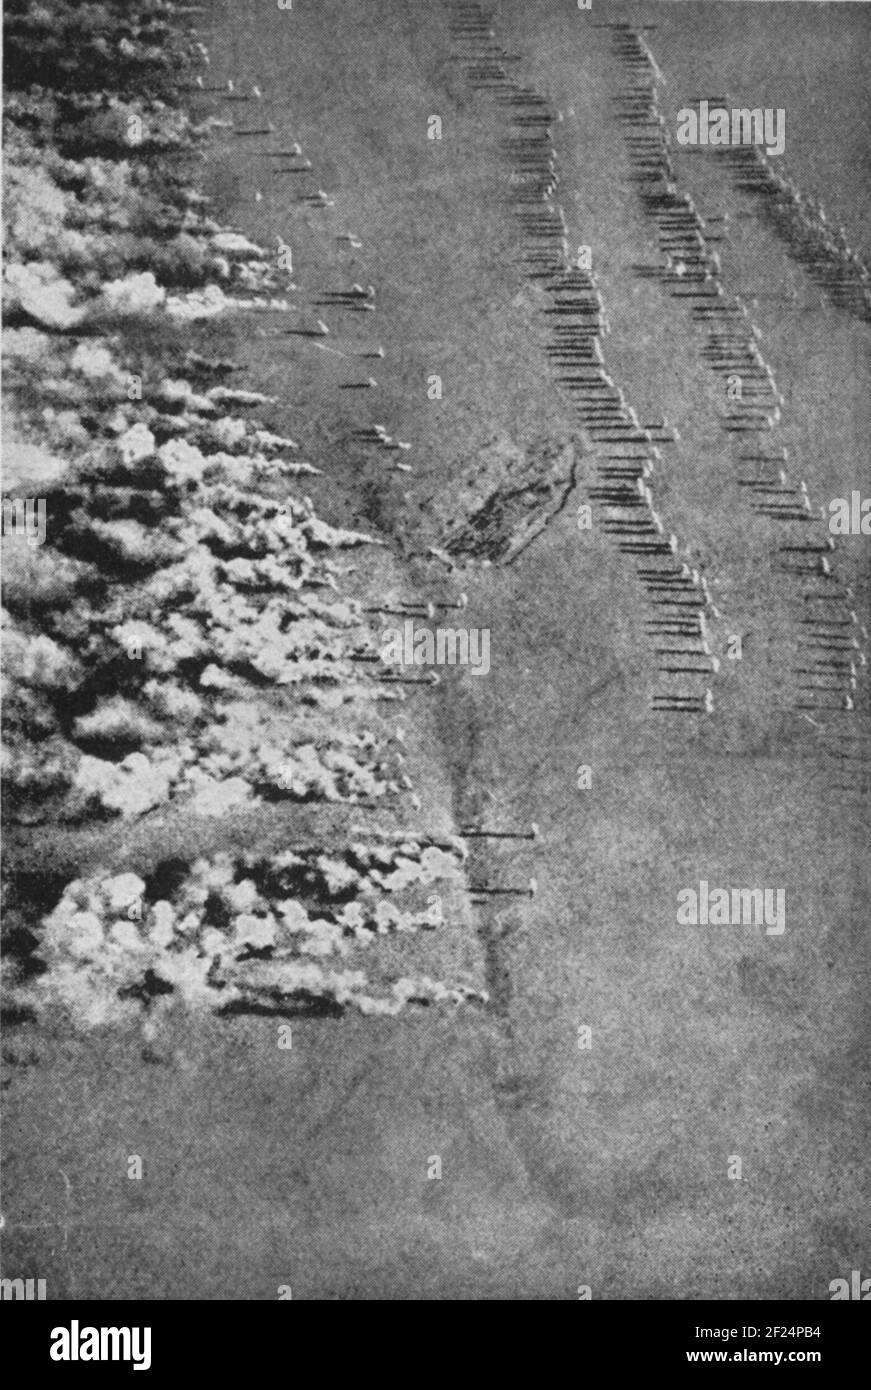 Una foto aerea d'epoca dell'esercito tedesco che conduce un attacco a gas sul fronte orientale durante la prima guerra mondiale del 1916 circa contro l'esercito imperiale russo. Gas chimici come cloro, bromo, fosgene e difosgene sono stati ampiamente utilizzati dall'esercito tedesco Foto Stock